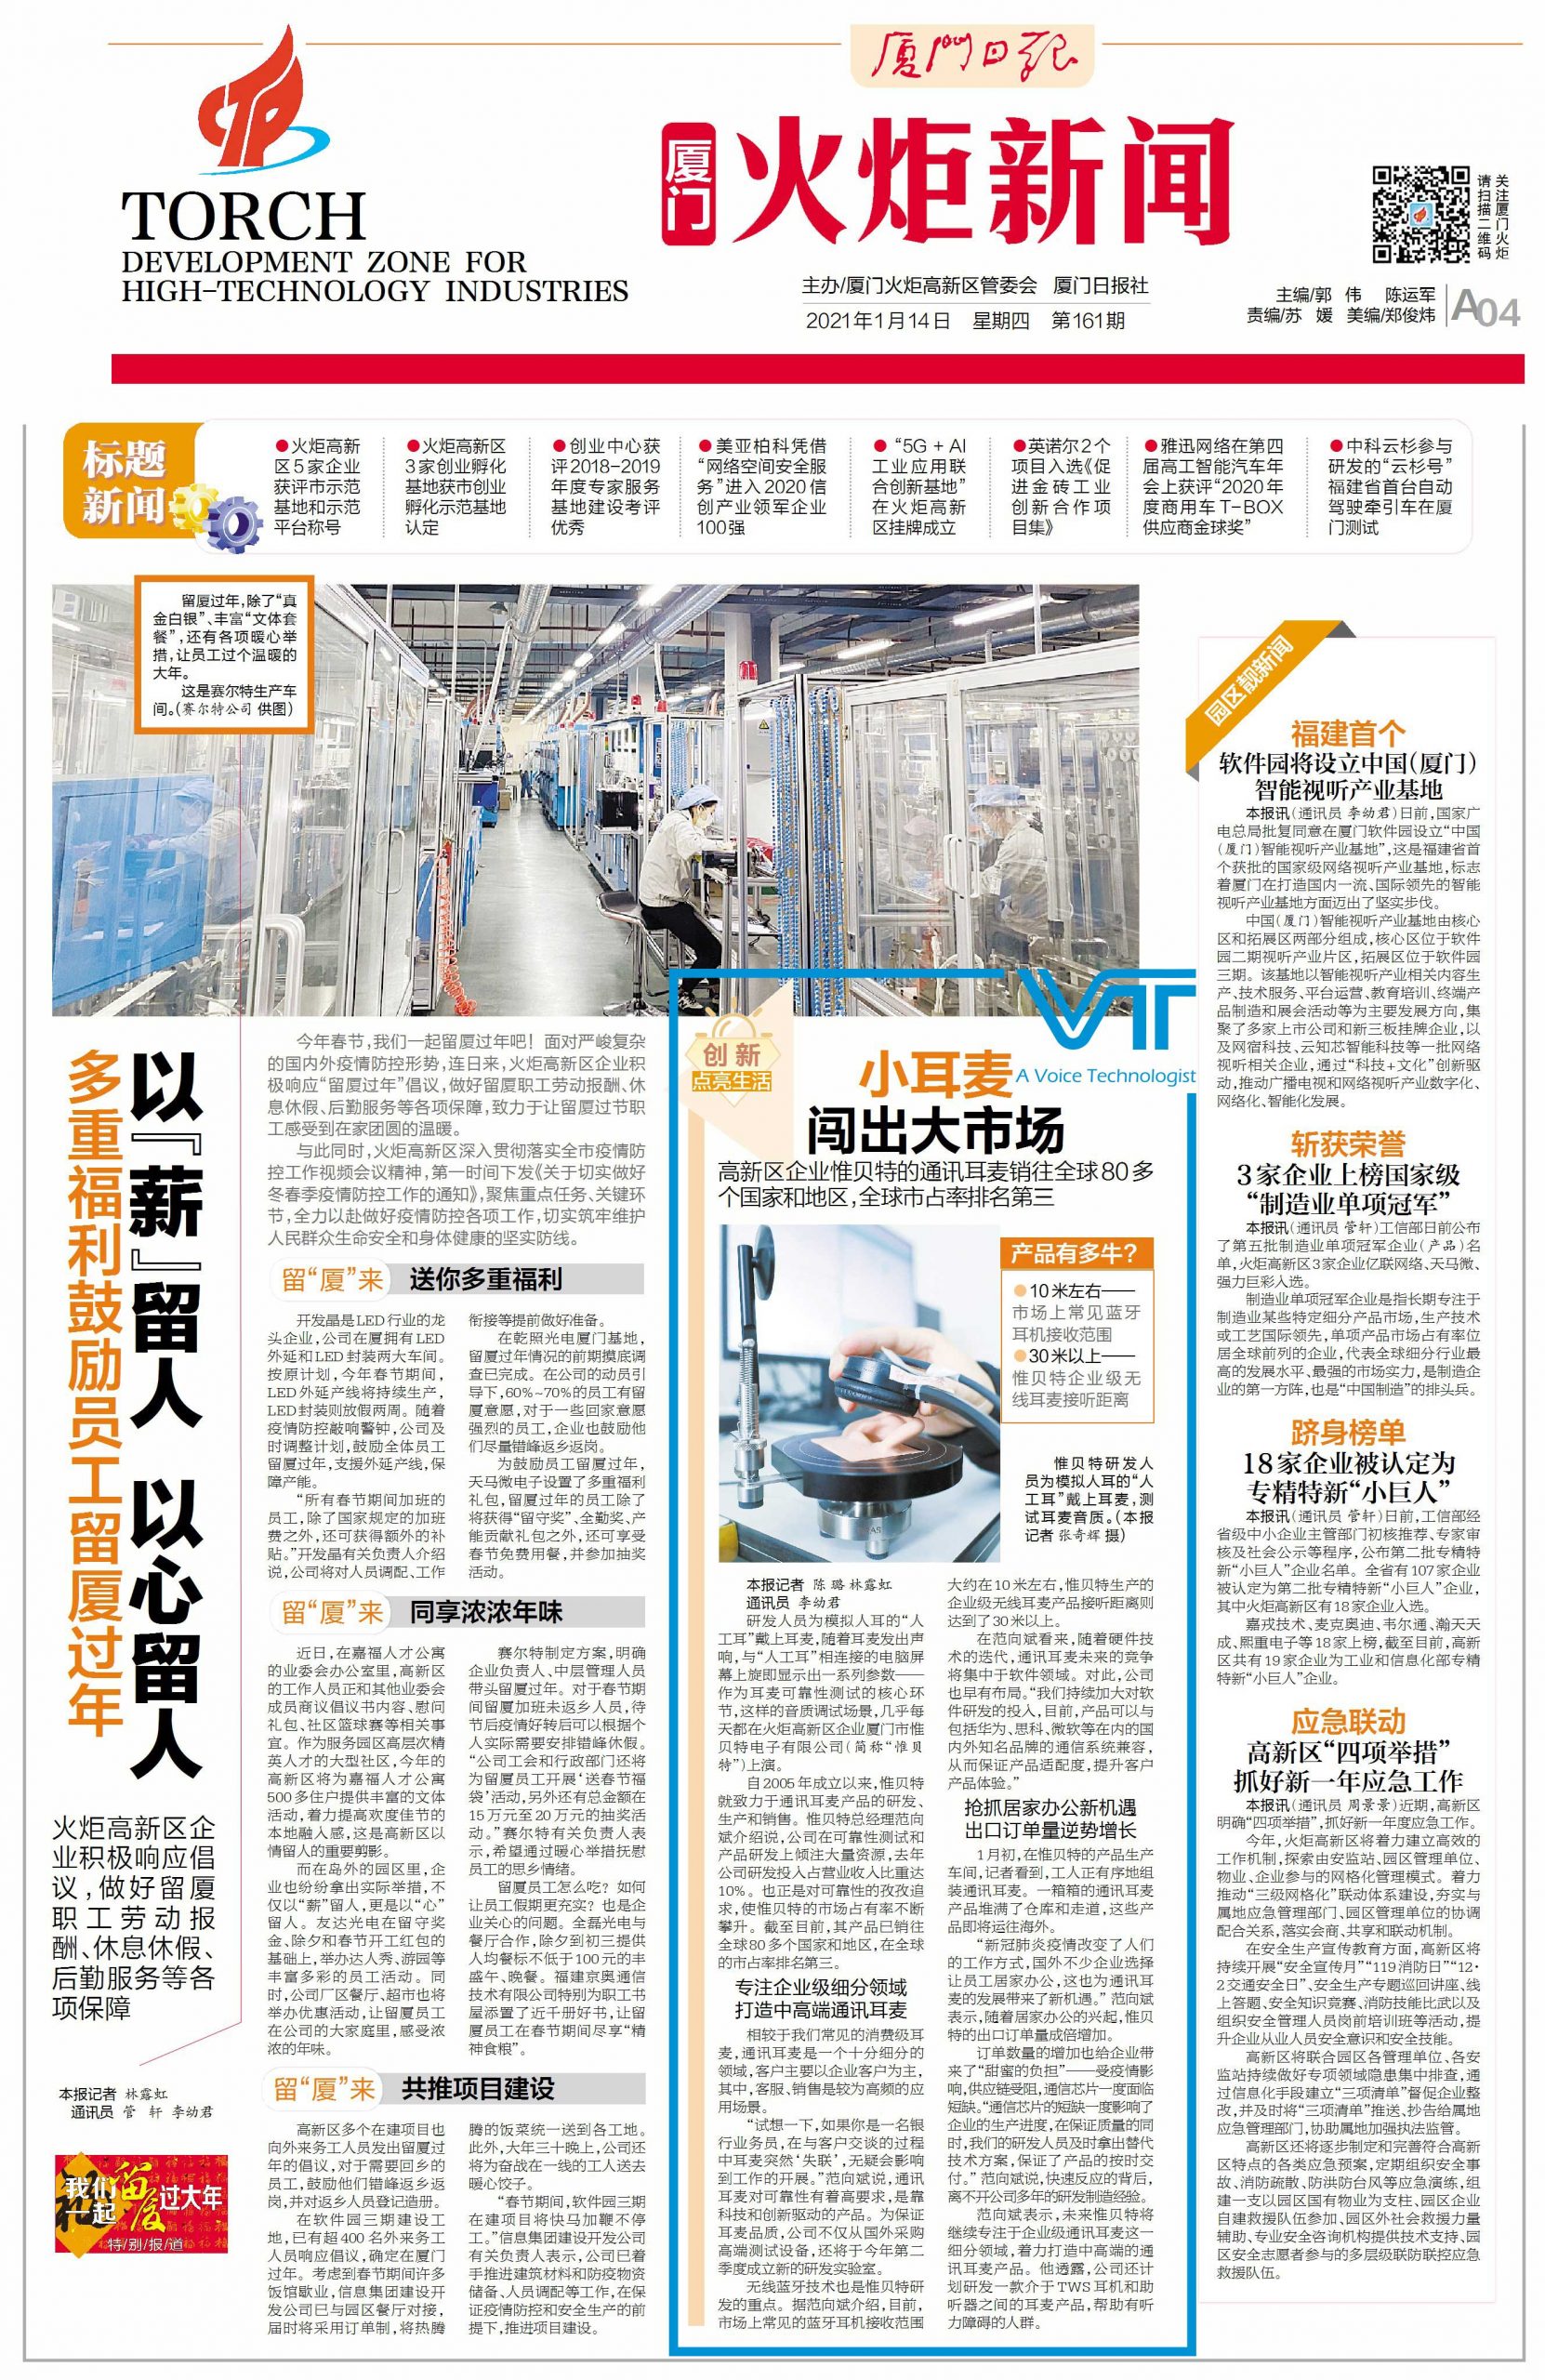 Flash News-VT Geschichte wurde in den großen chinesischen Netzwerkplattformen veröffentlicht!